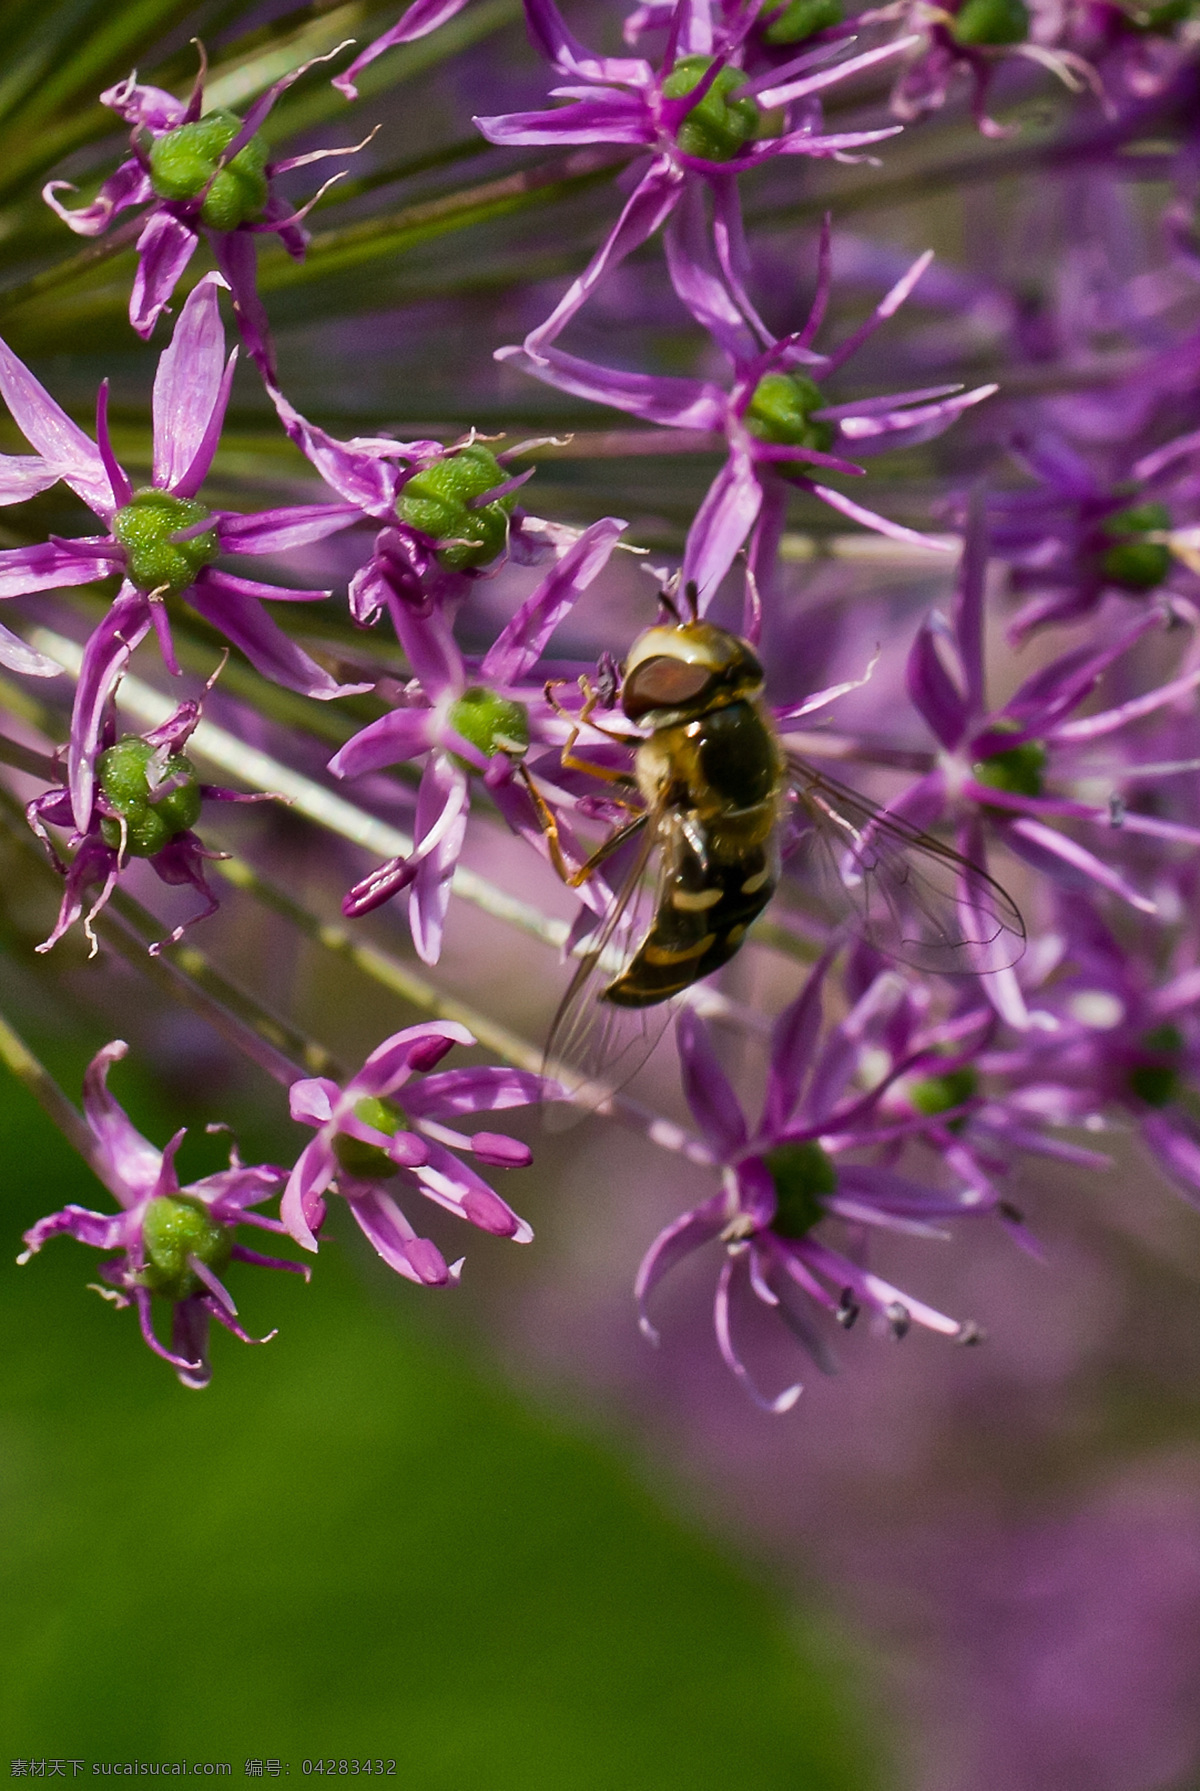 野葱 中 蜜蜂 北京 花草 绿草 生物世界 植物园 紫花 野葱中的蜜蜂 野葱花 昆虫